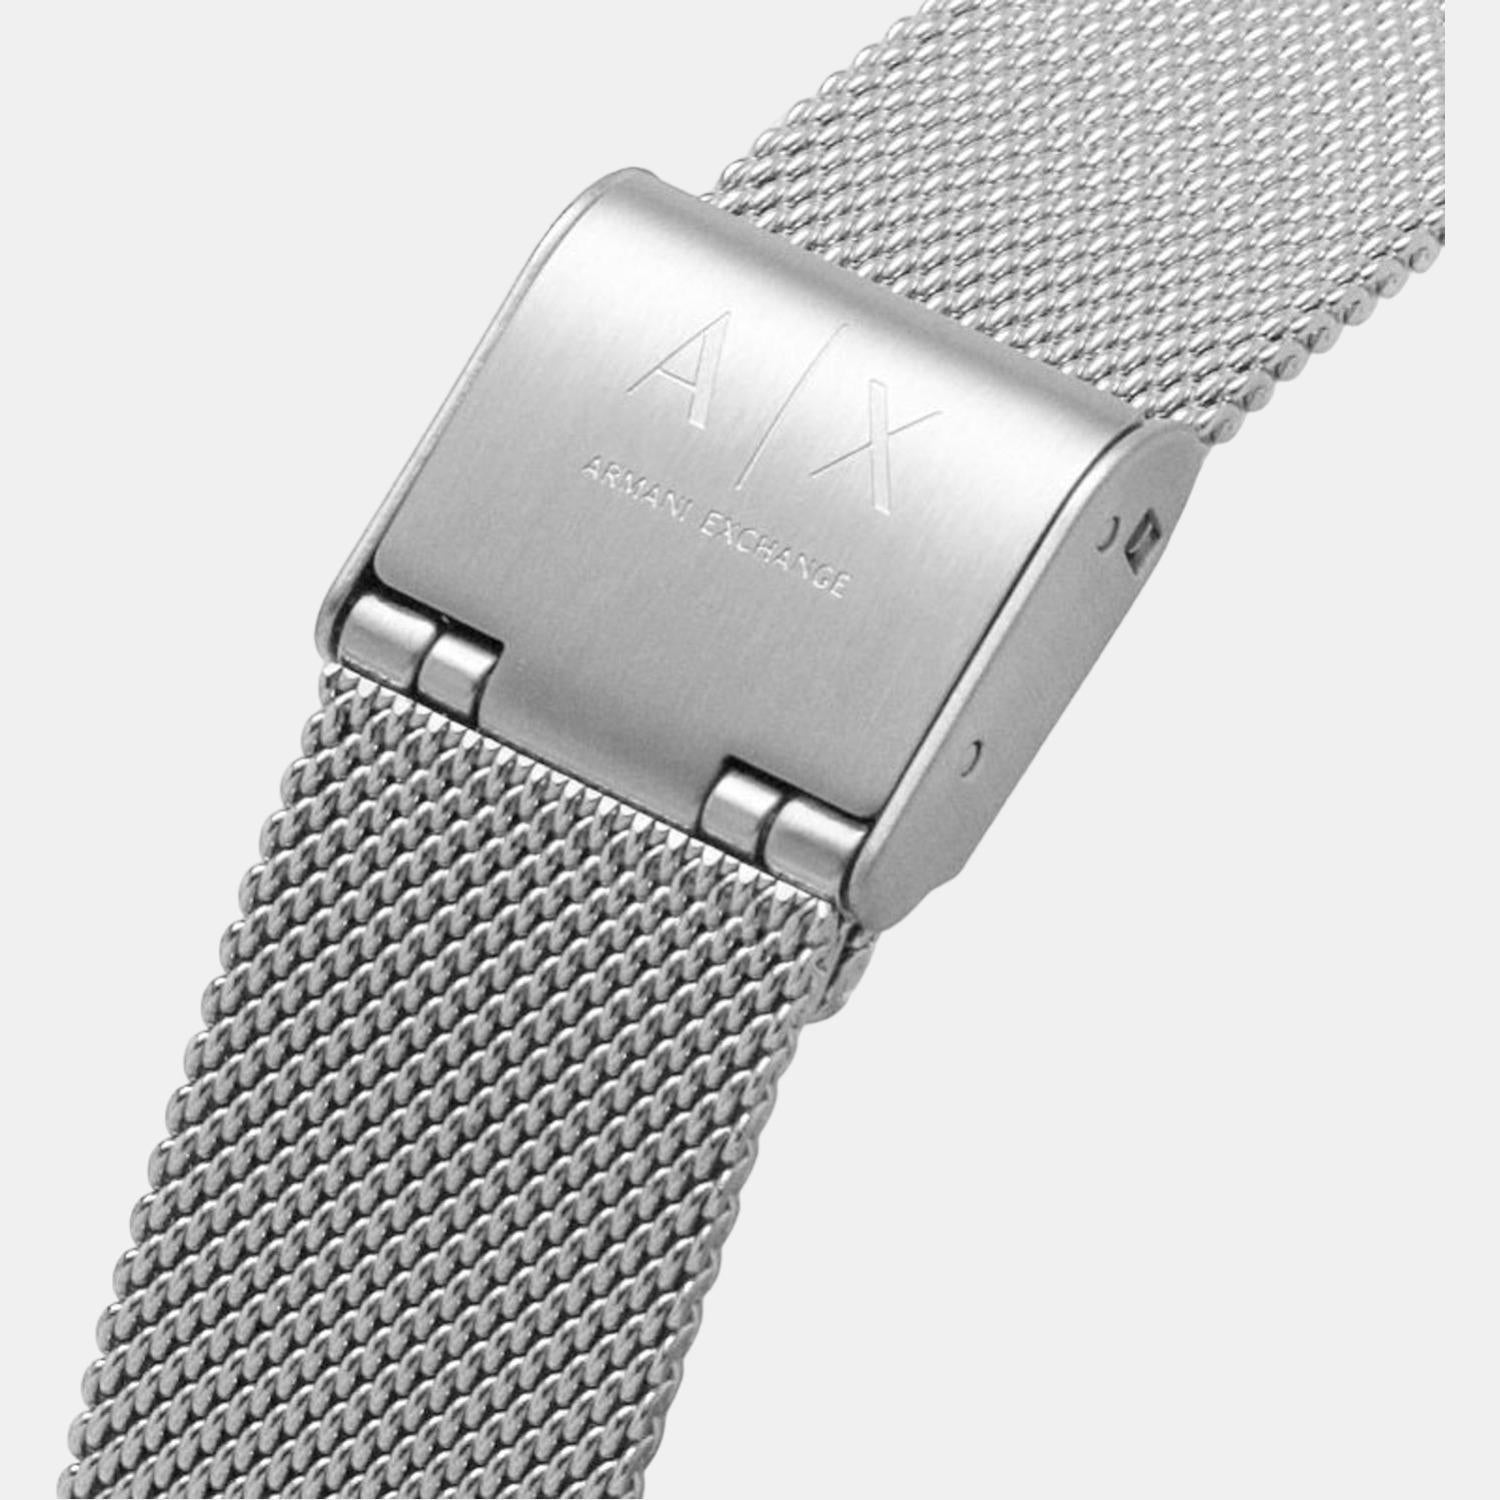 armani-exchange-silver-analog-women-watch-ax7130set